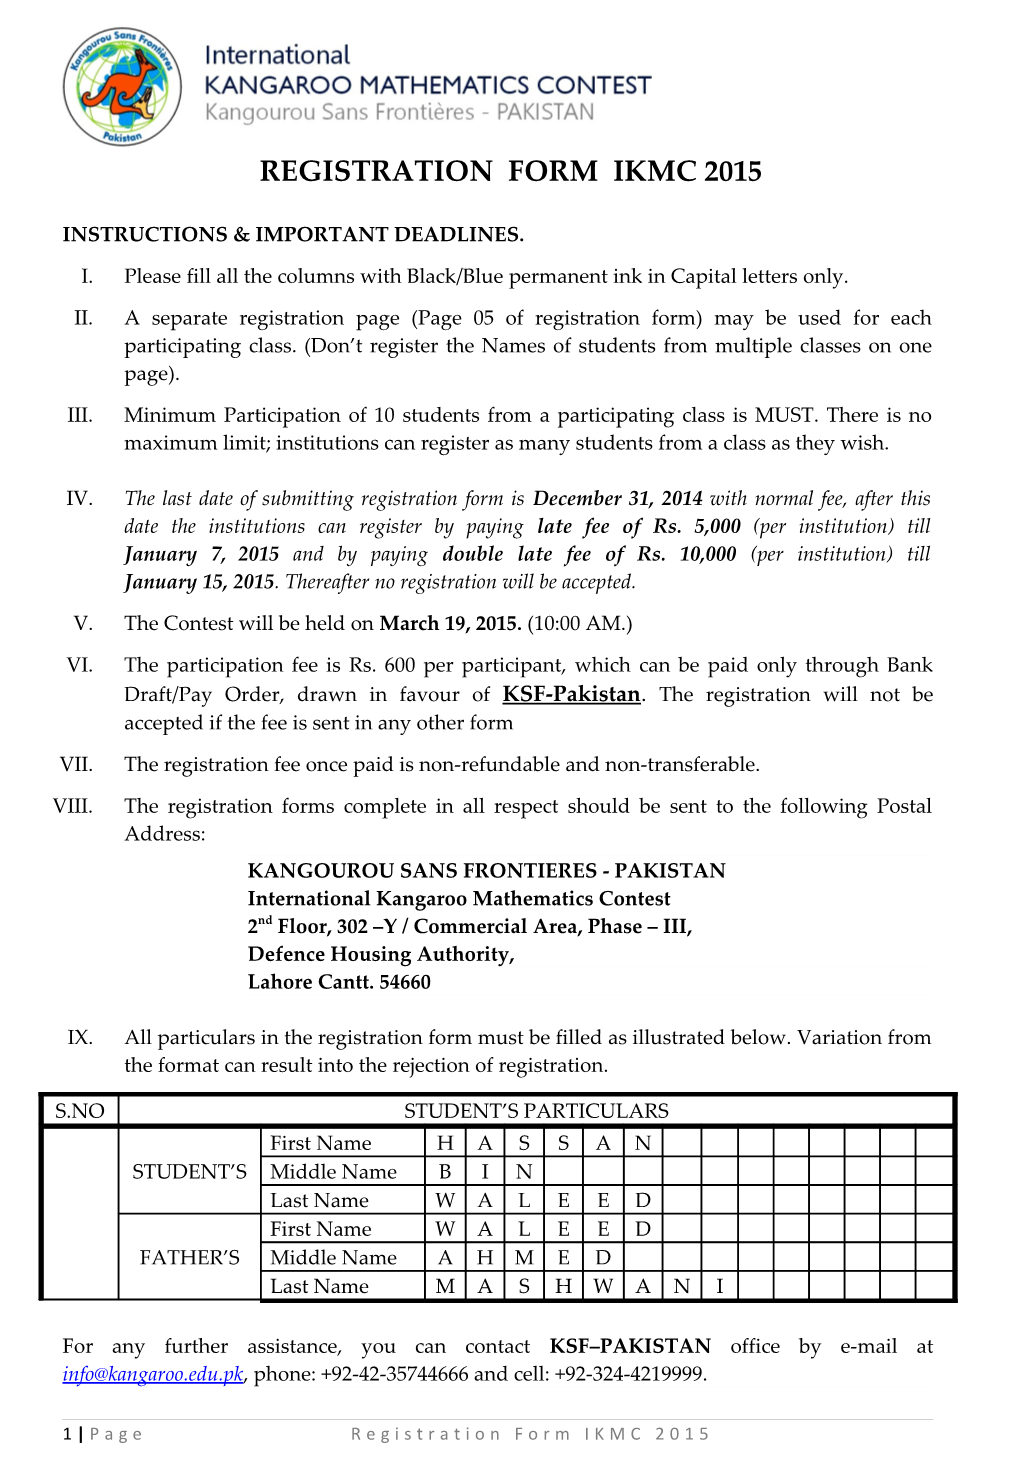 Registration Form Ikmc2015